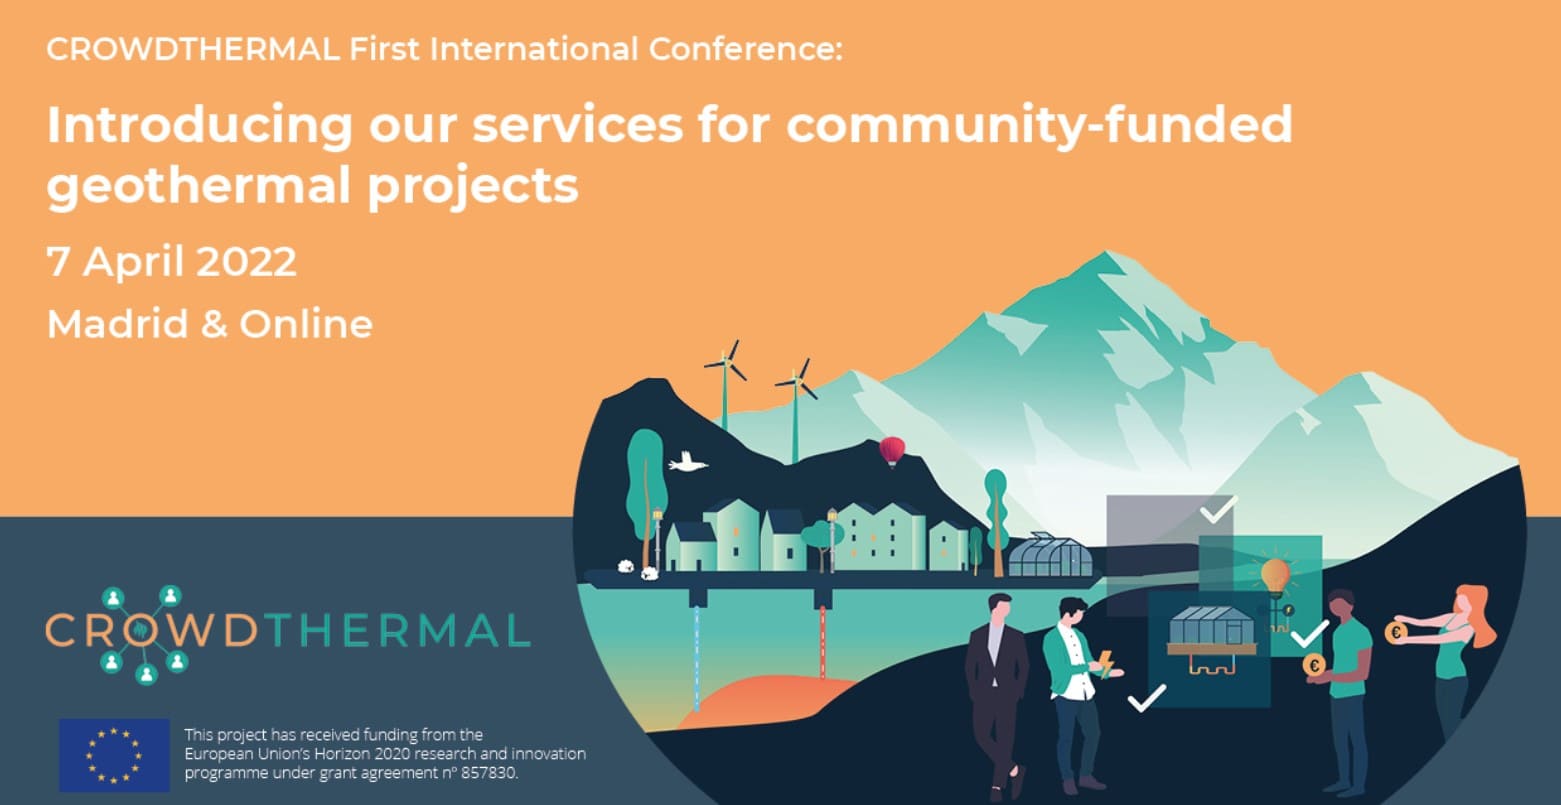 Międzynarodowa konferencja CrowdThermal_Przedstawiamy nasze usługi dla projektów fetermalnych finansowanych przez społeczność — CrowdfundingHub